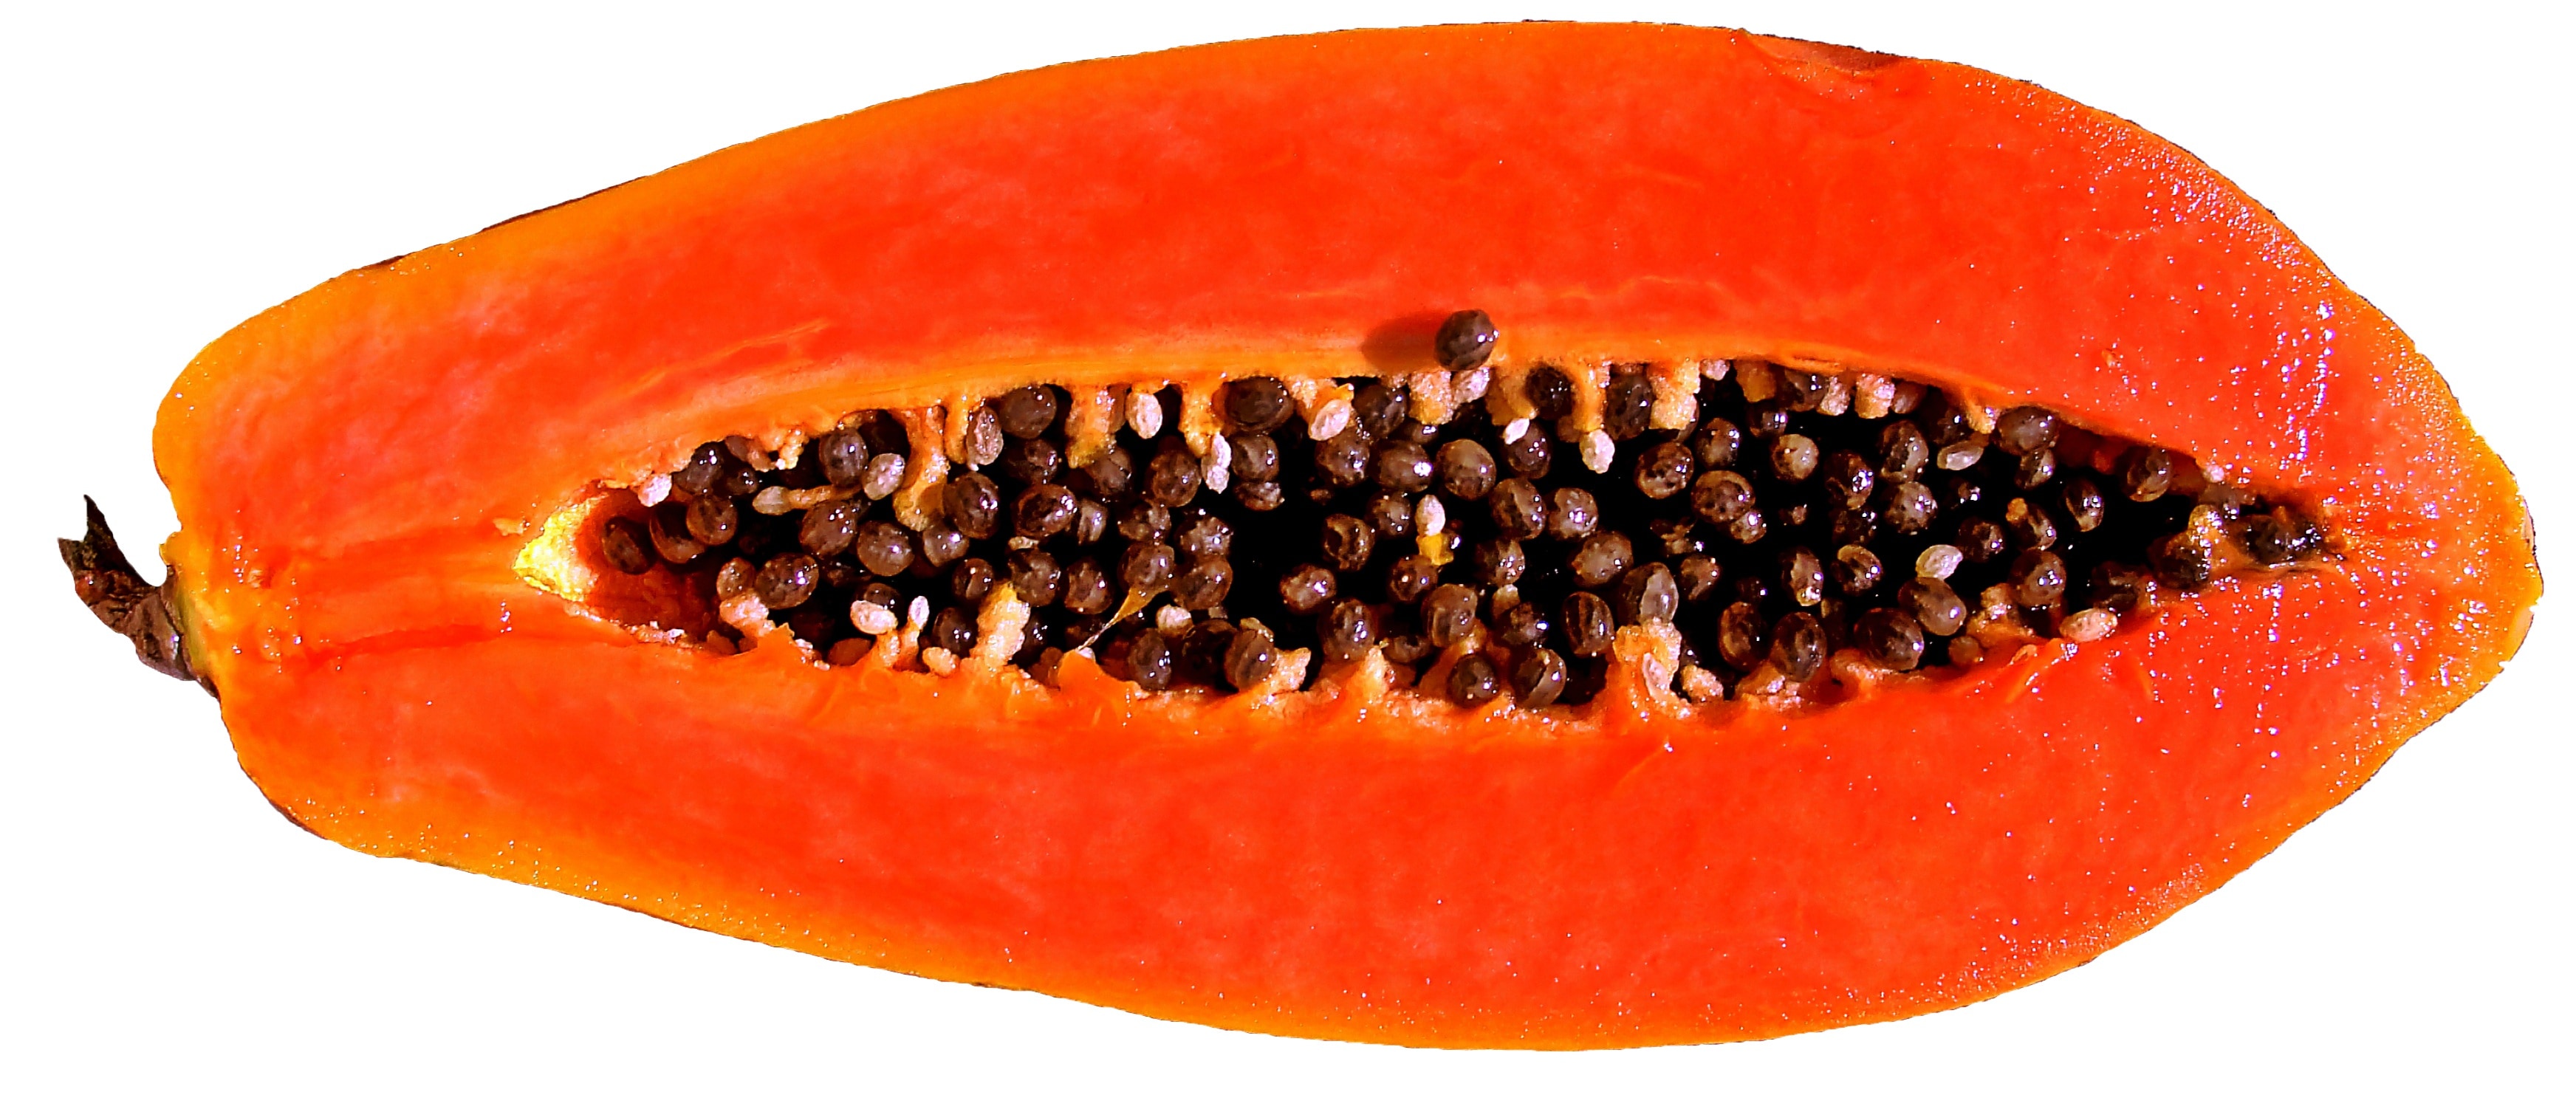 orange papaya fruit